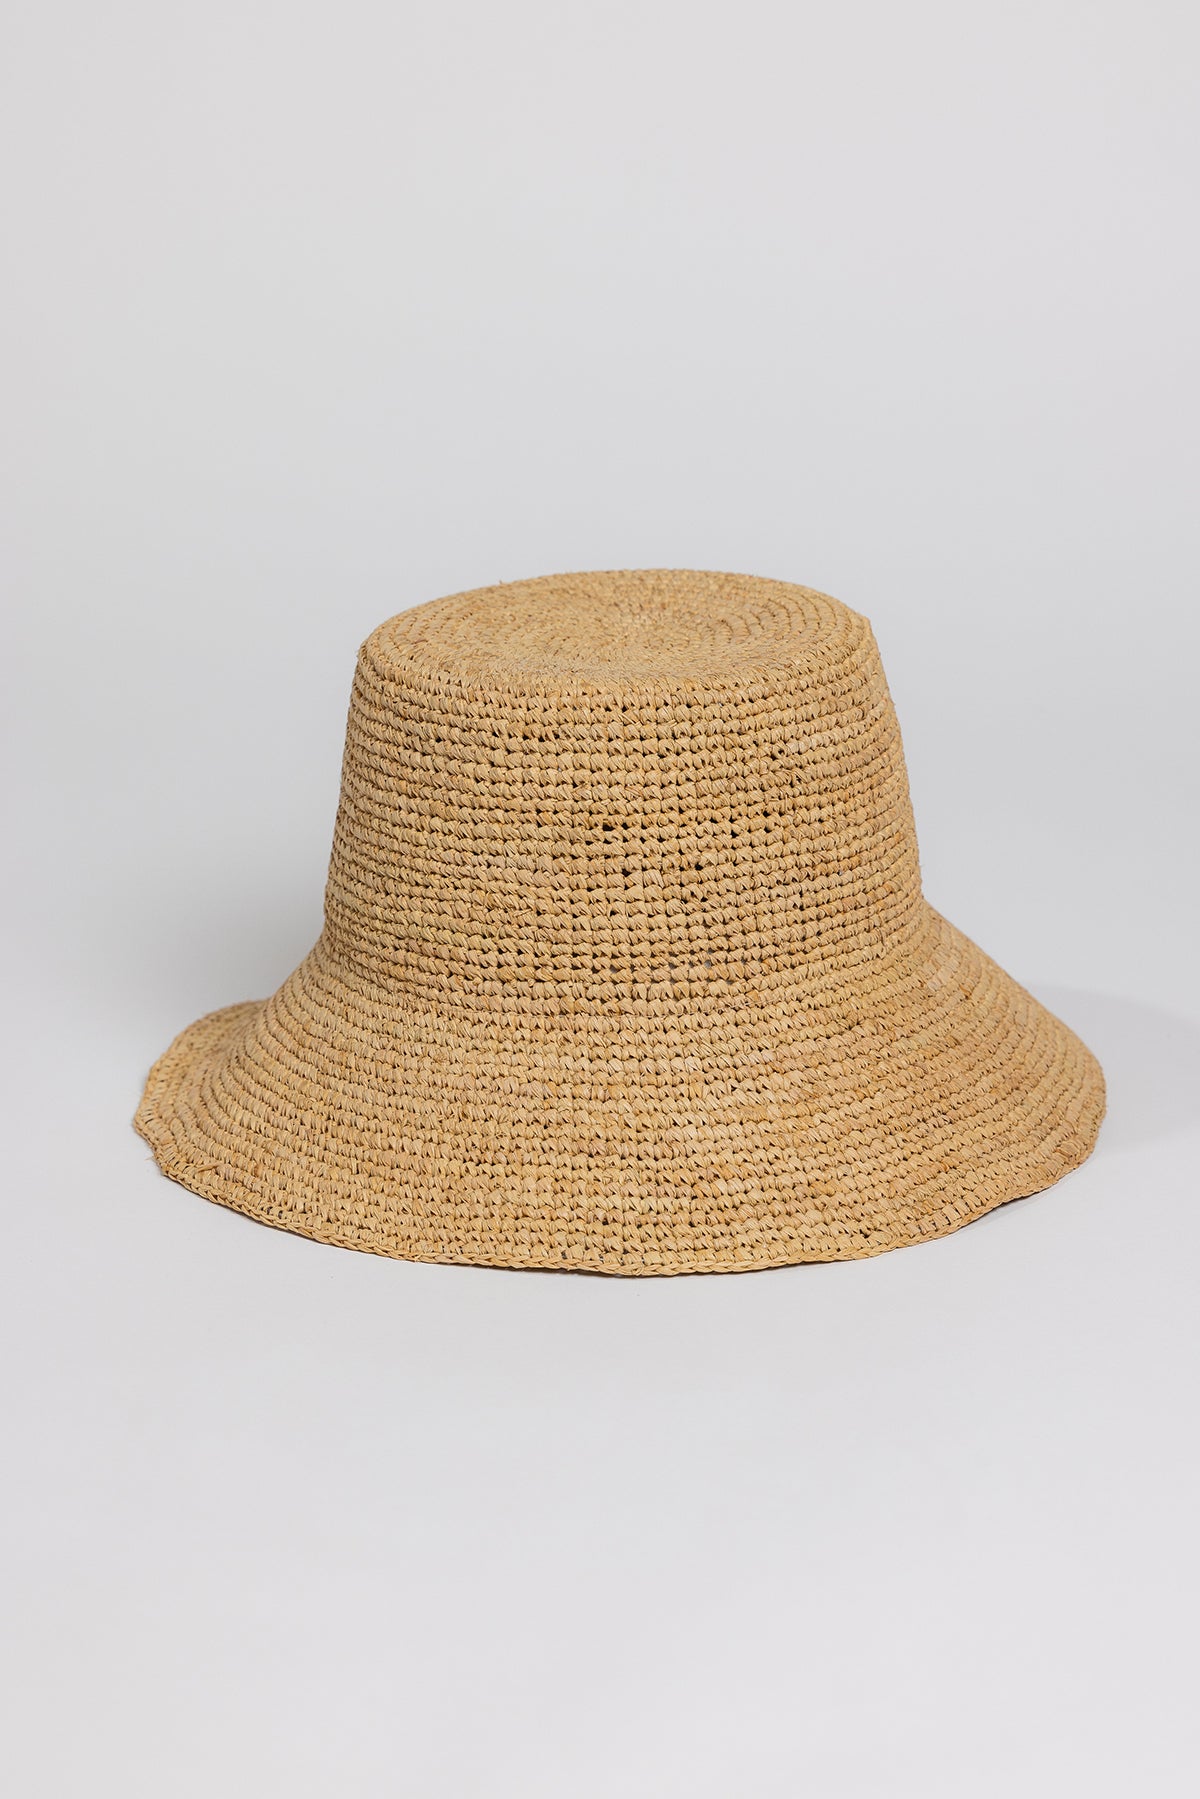 a Velvet by Graham & Spencer CHIC CROCHET BUCKET HAT on a white background.-26166358147265